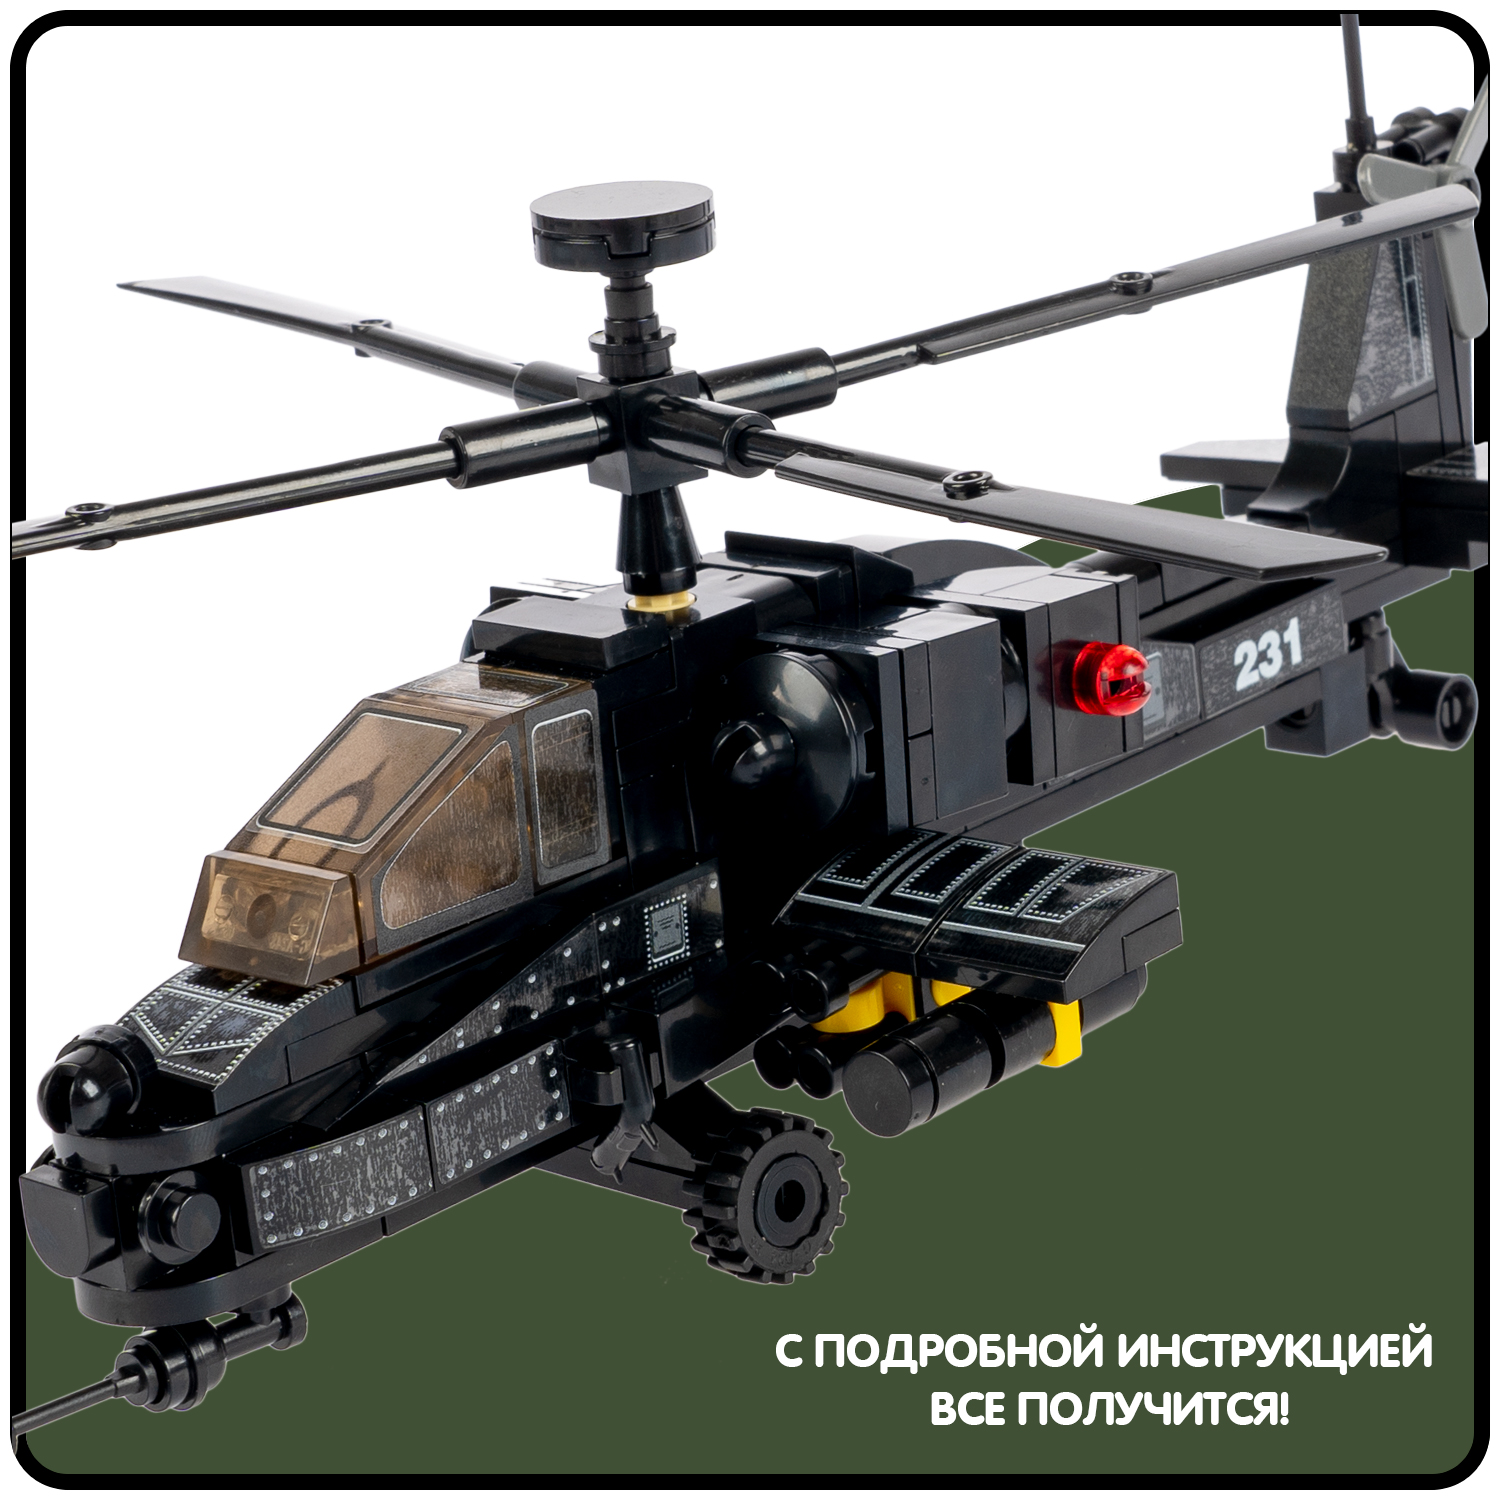 Конструктор BONDIBON Вертолет 230 деталей подвижные винты черного цвета серия Военный Десант - фото 7